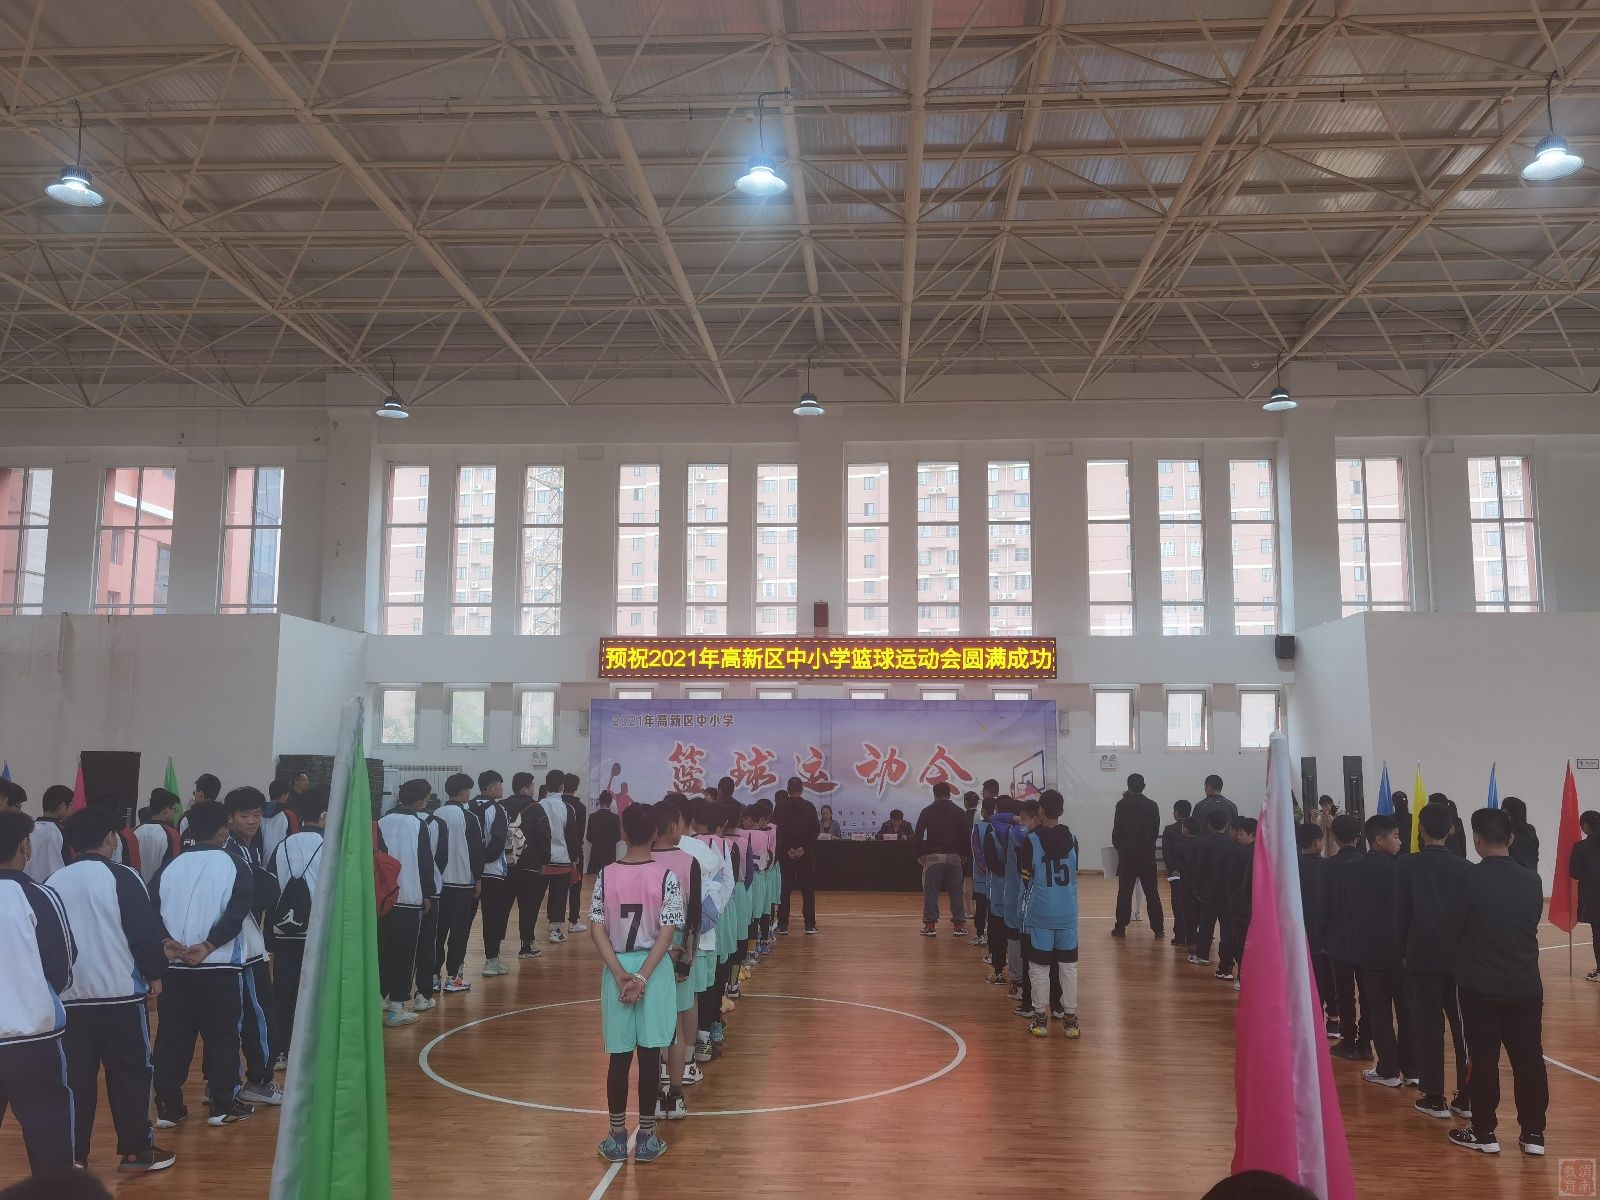 激情“篮”不住 少年聚赛场 ——高新区成功举办2021年中小学生暨教职工篮球比赛